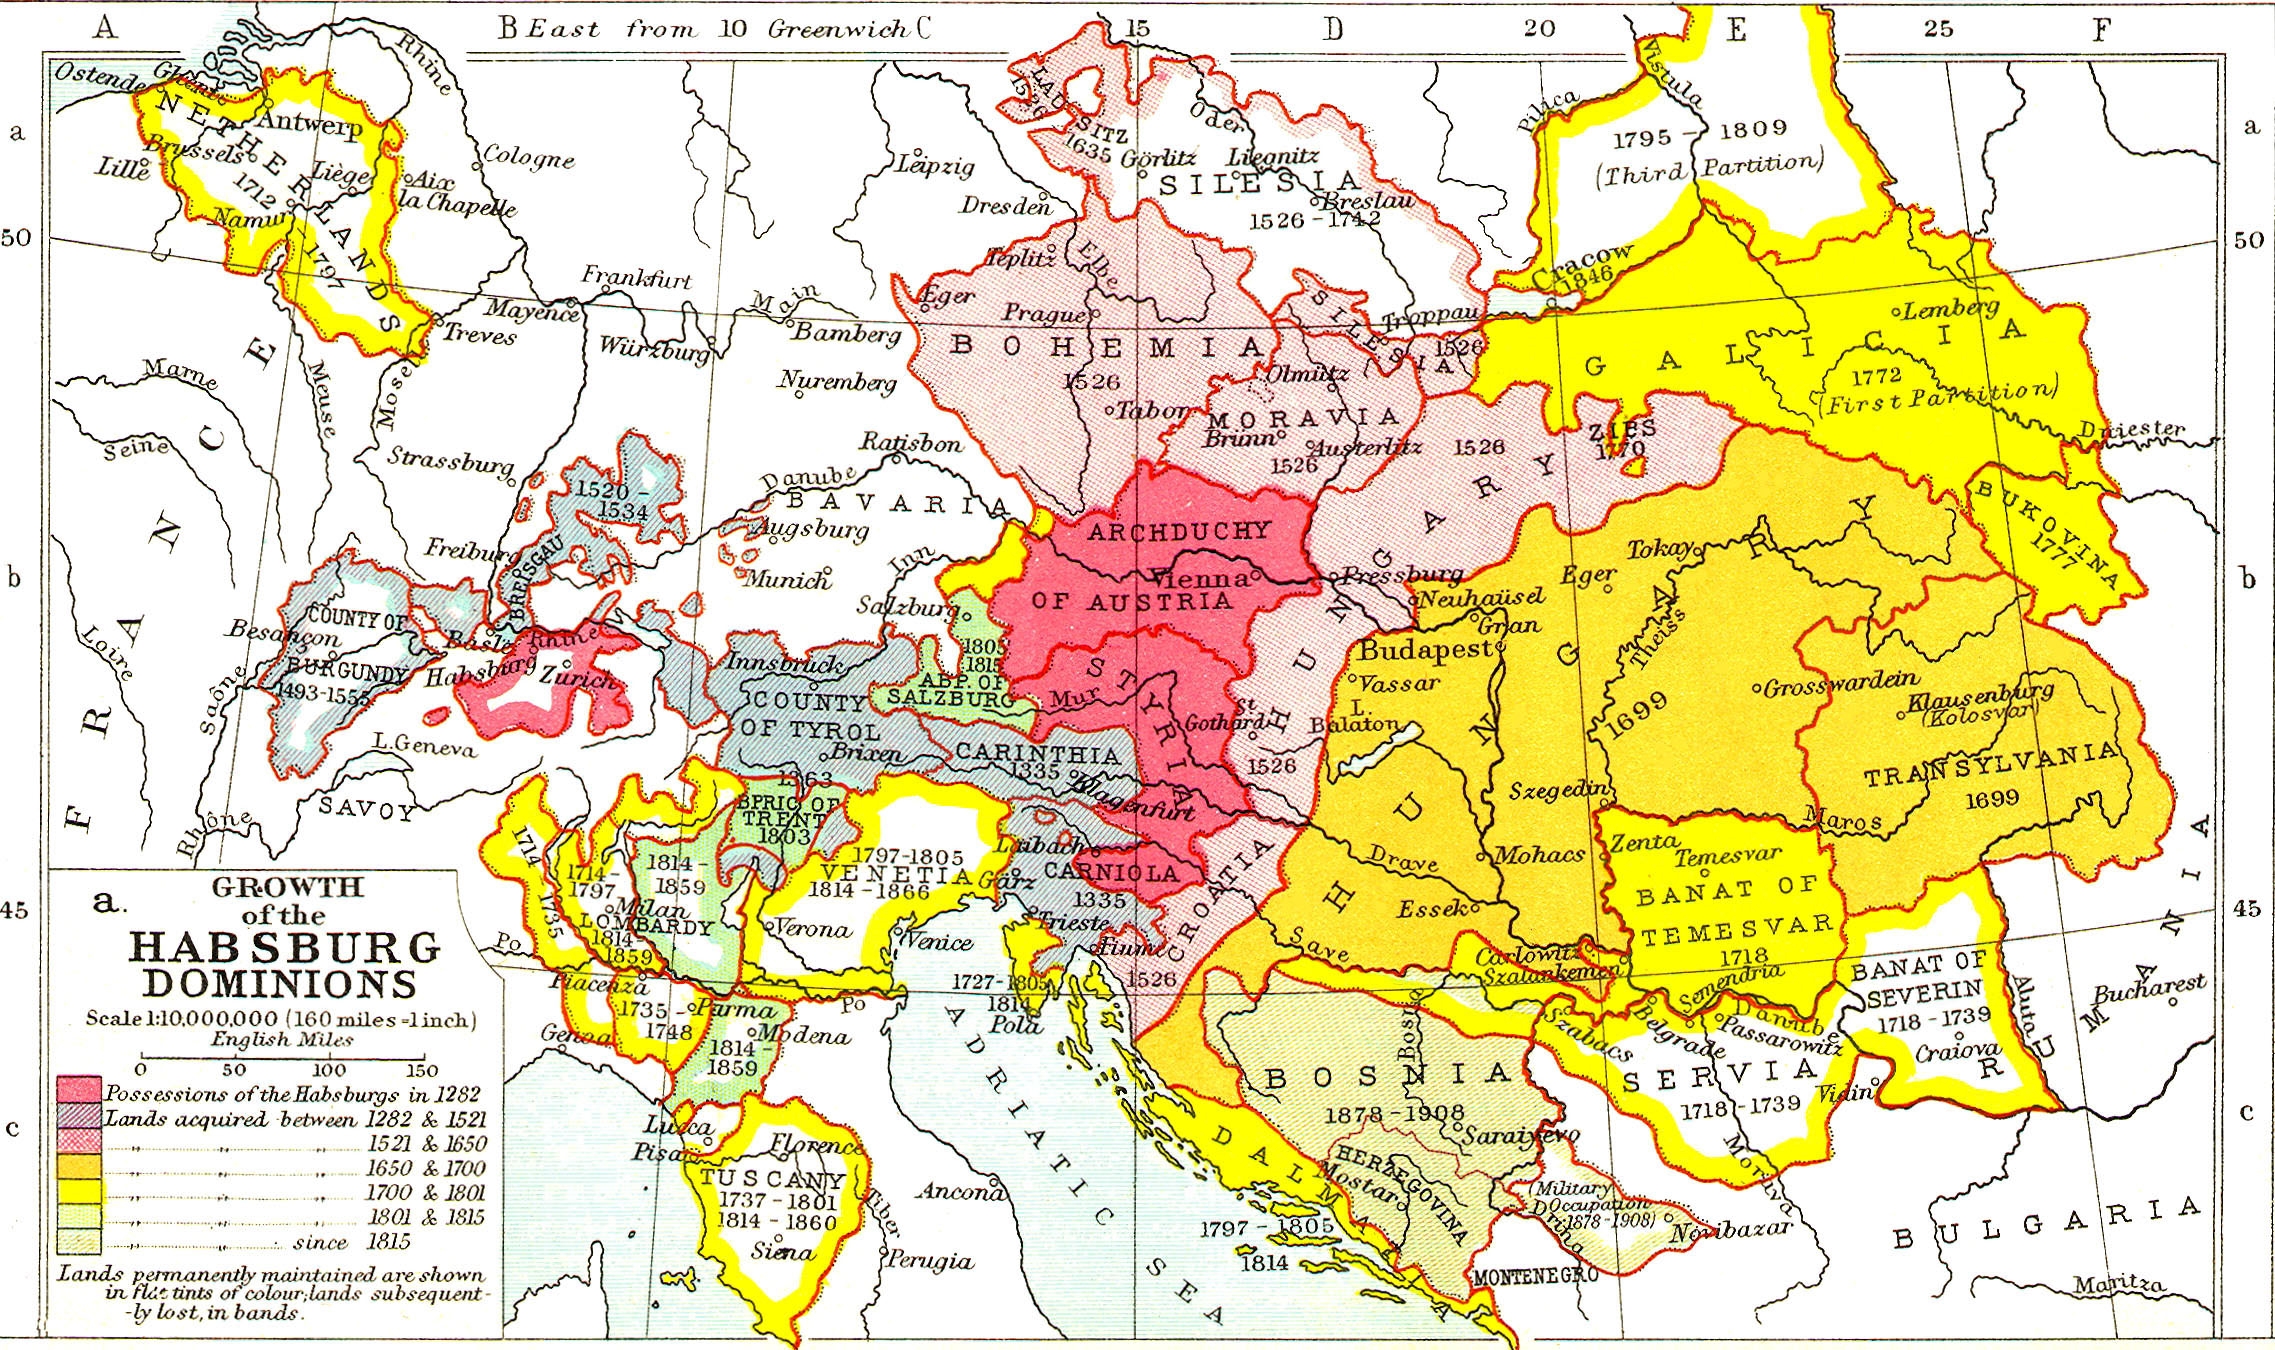 A térkép azt mutatja, hogyan nőtt a Habsburgok birodalma: a mályva színű területek a birodalom magja 1282 óta, a szürkék 1521-ig kerültek hozzájuk, a rózsaszínűek 1521 és 1650 között, a sötétebb sárgák 1650-1700 között, a sárgák 1700 és 1801 között, a világos sárgák 1801 és 1815 között, a zöld területek pedig 1815 után. A térkép szerzője ismeretlen, valószínűleg a 20. század elejéről származik.